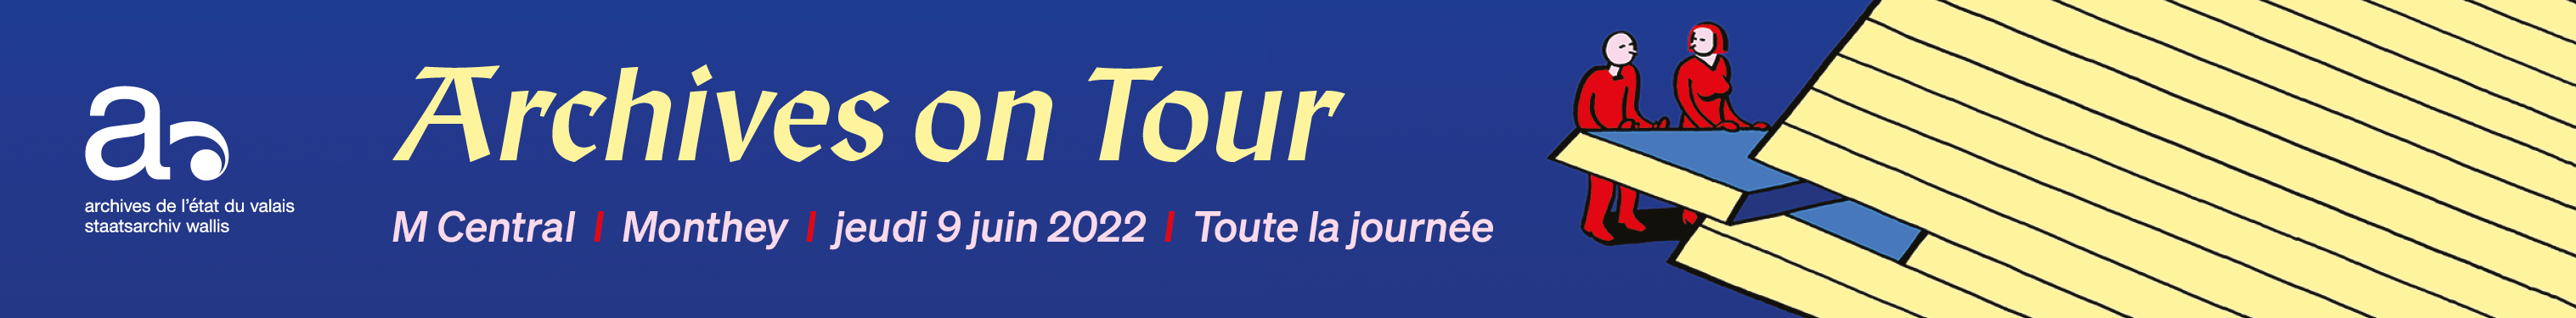 Canton du Valais / Archives on Tour